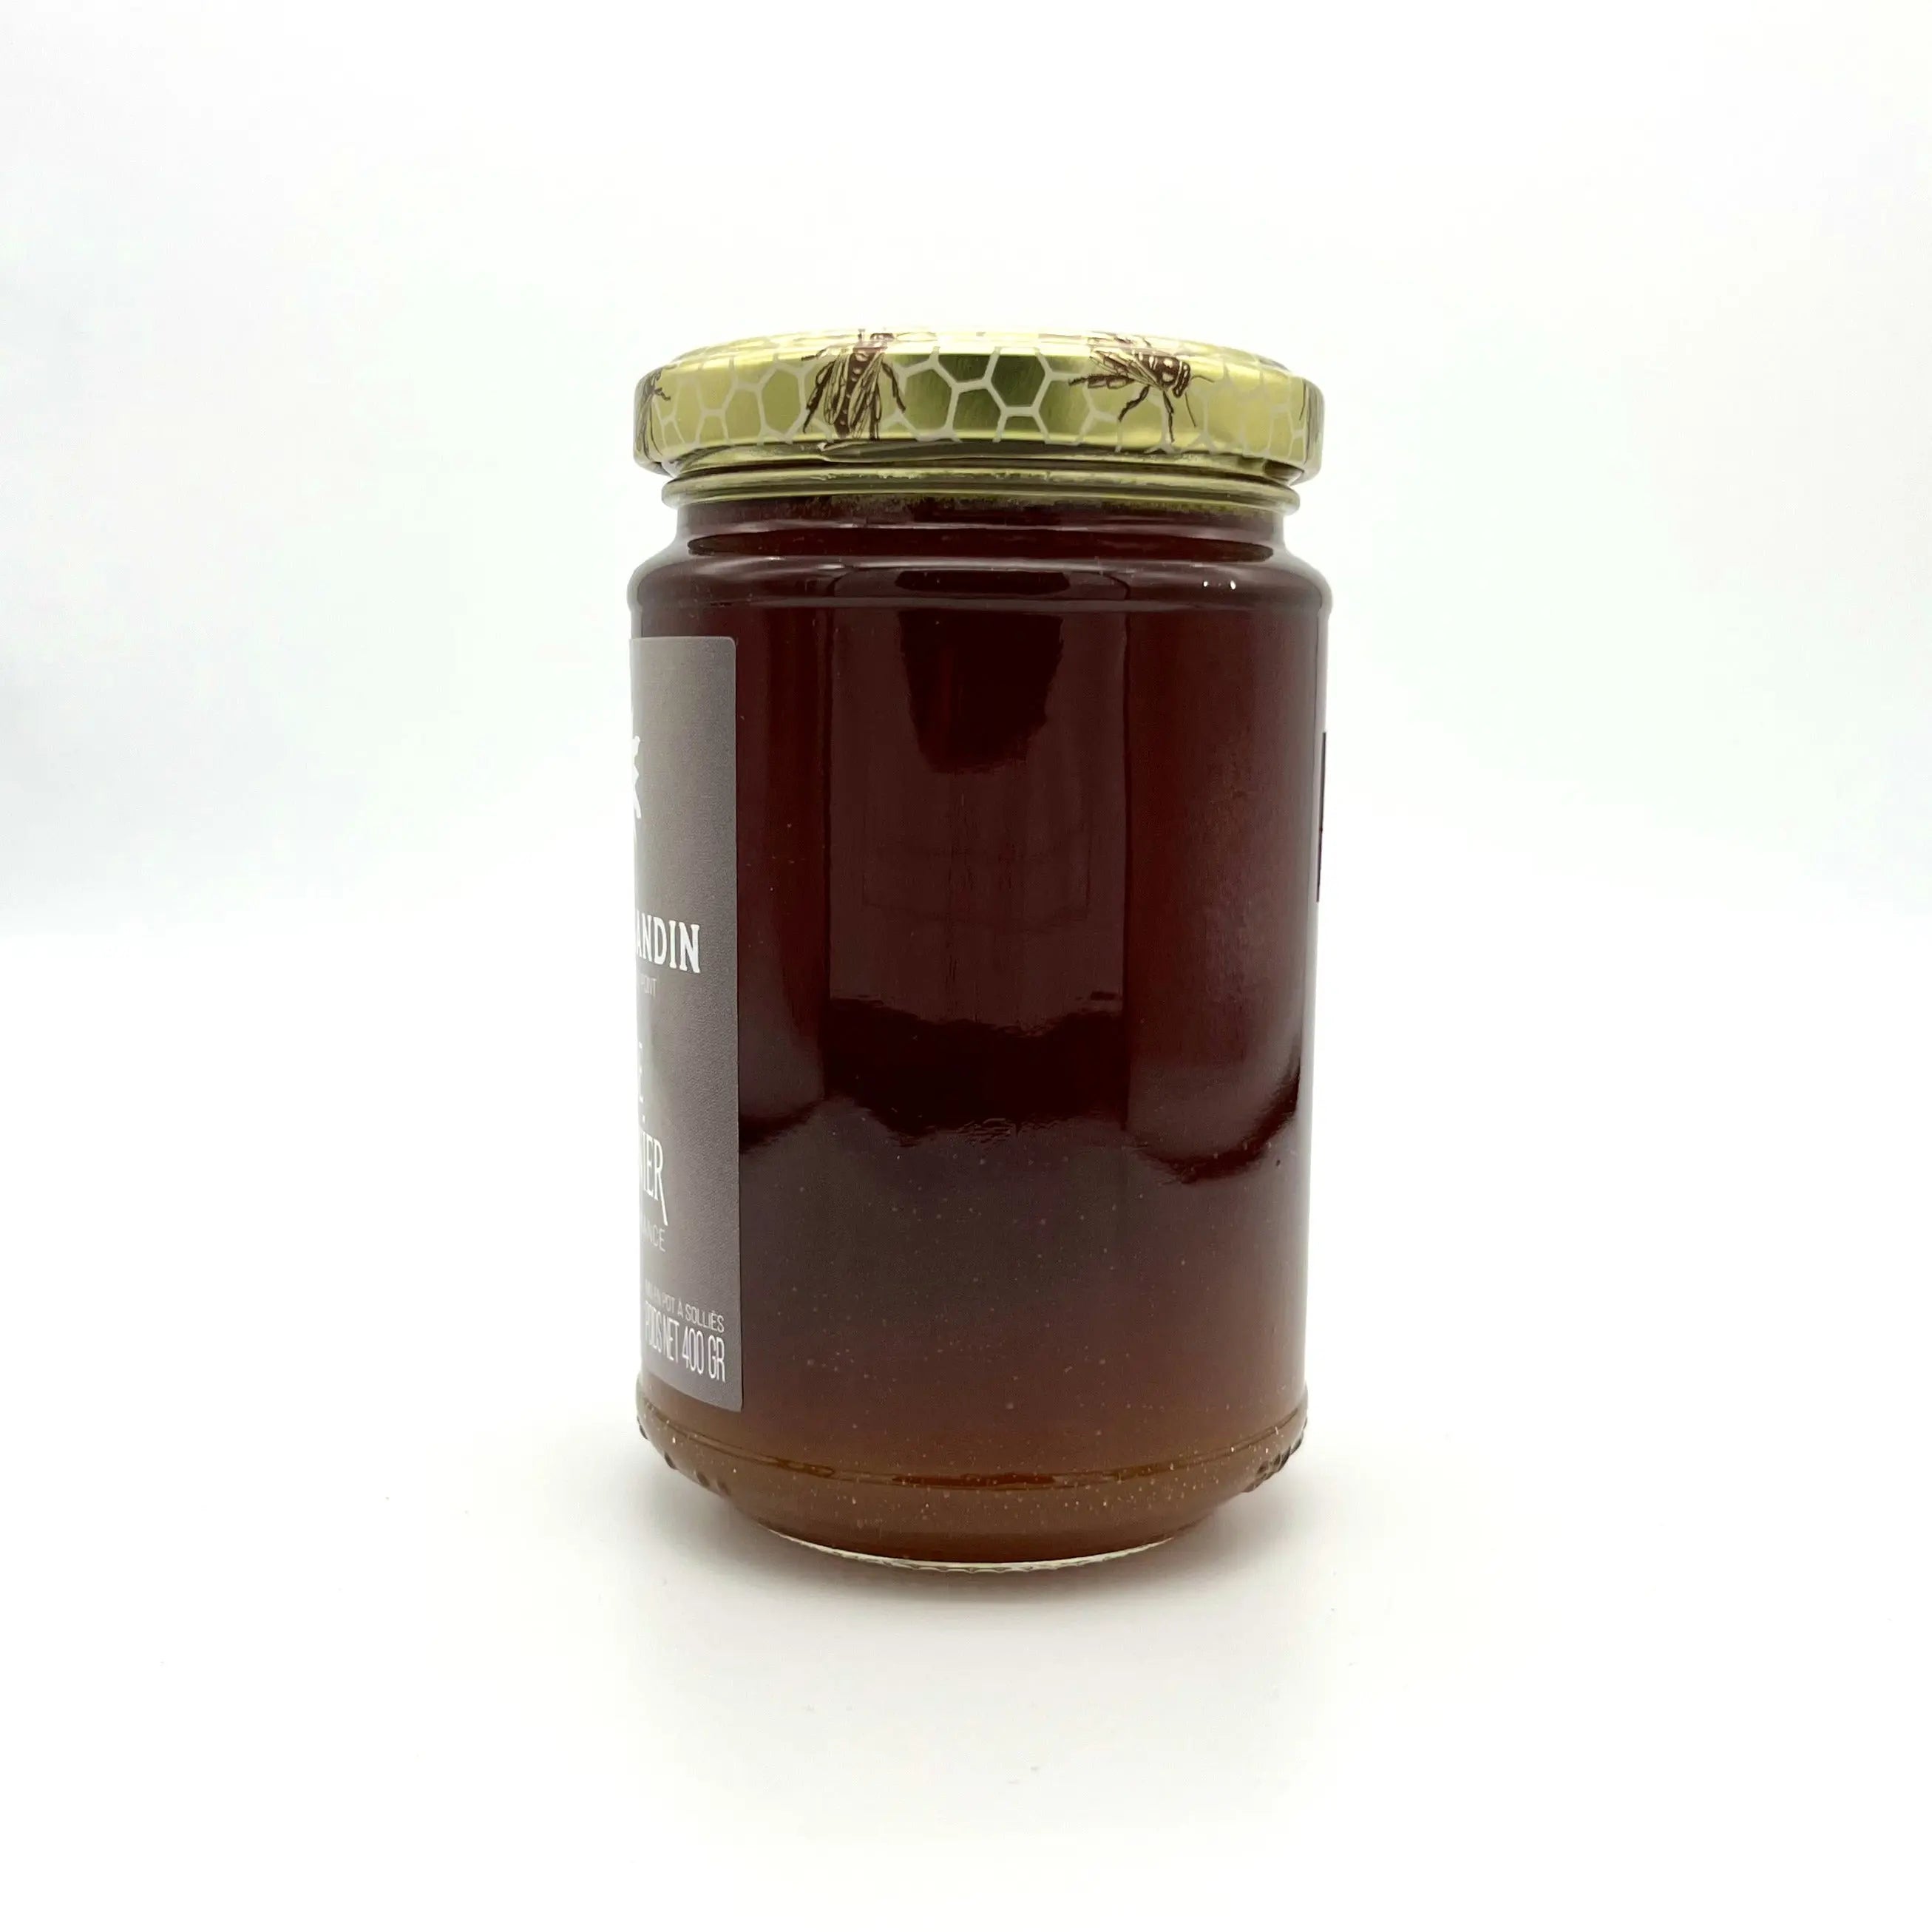 Miel traditionnel de Châtaignier, famille GANDIN, apiculteurs